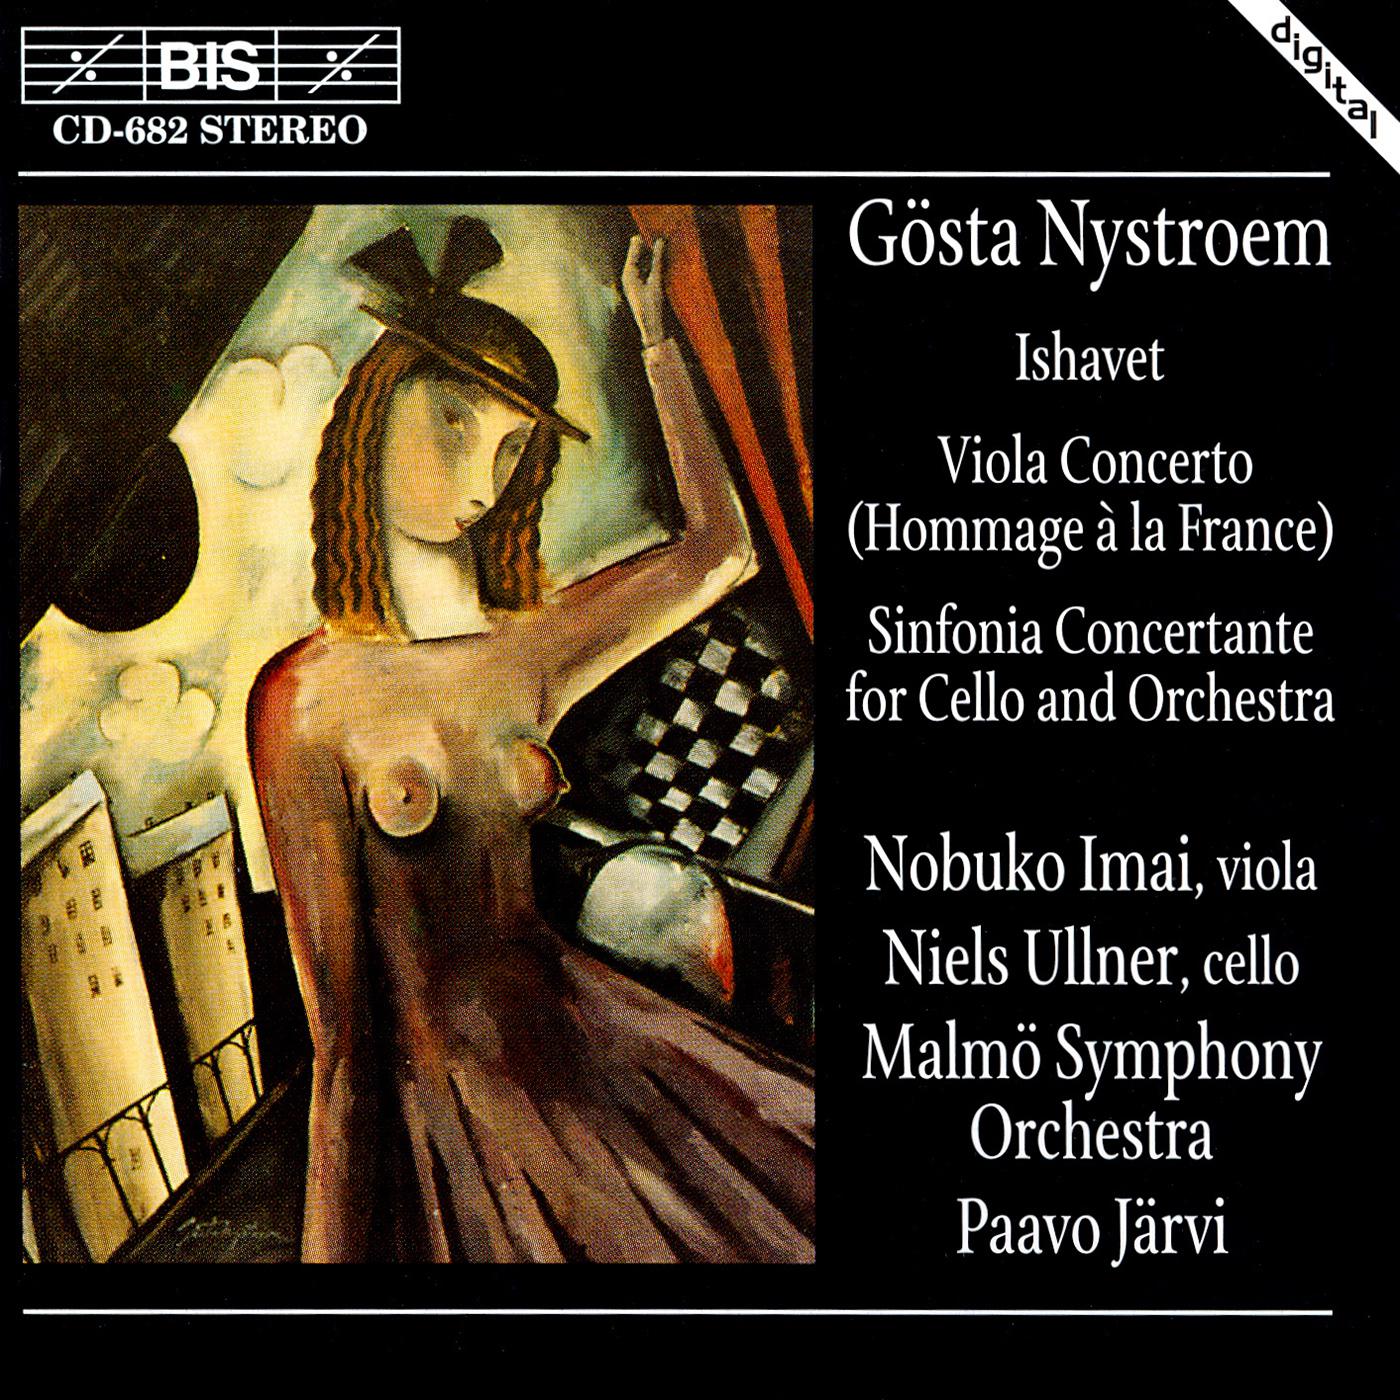 NYSTROEM: Ishavet / Viola Concerto / Sinfonia concertante